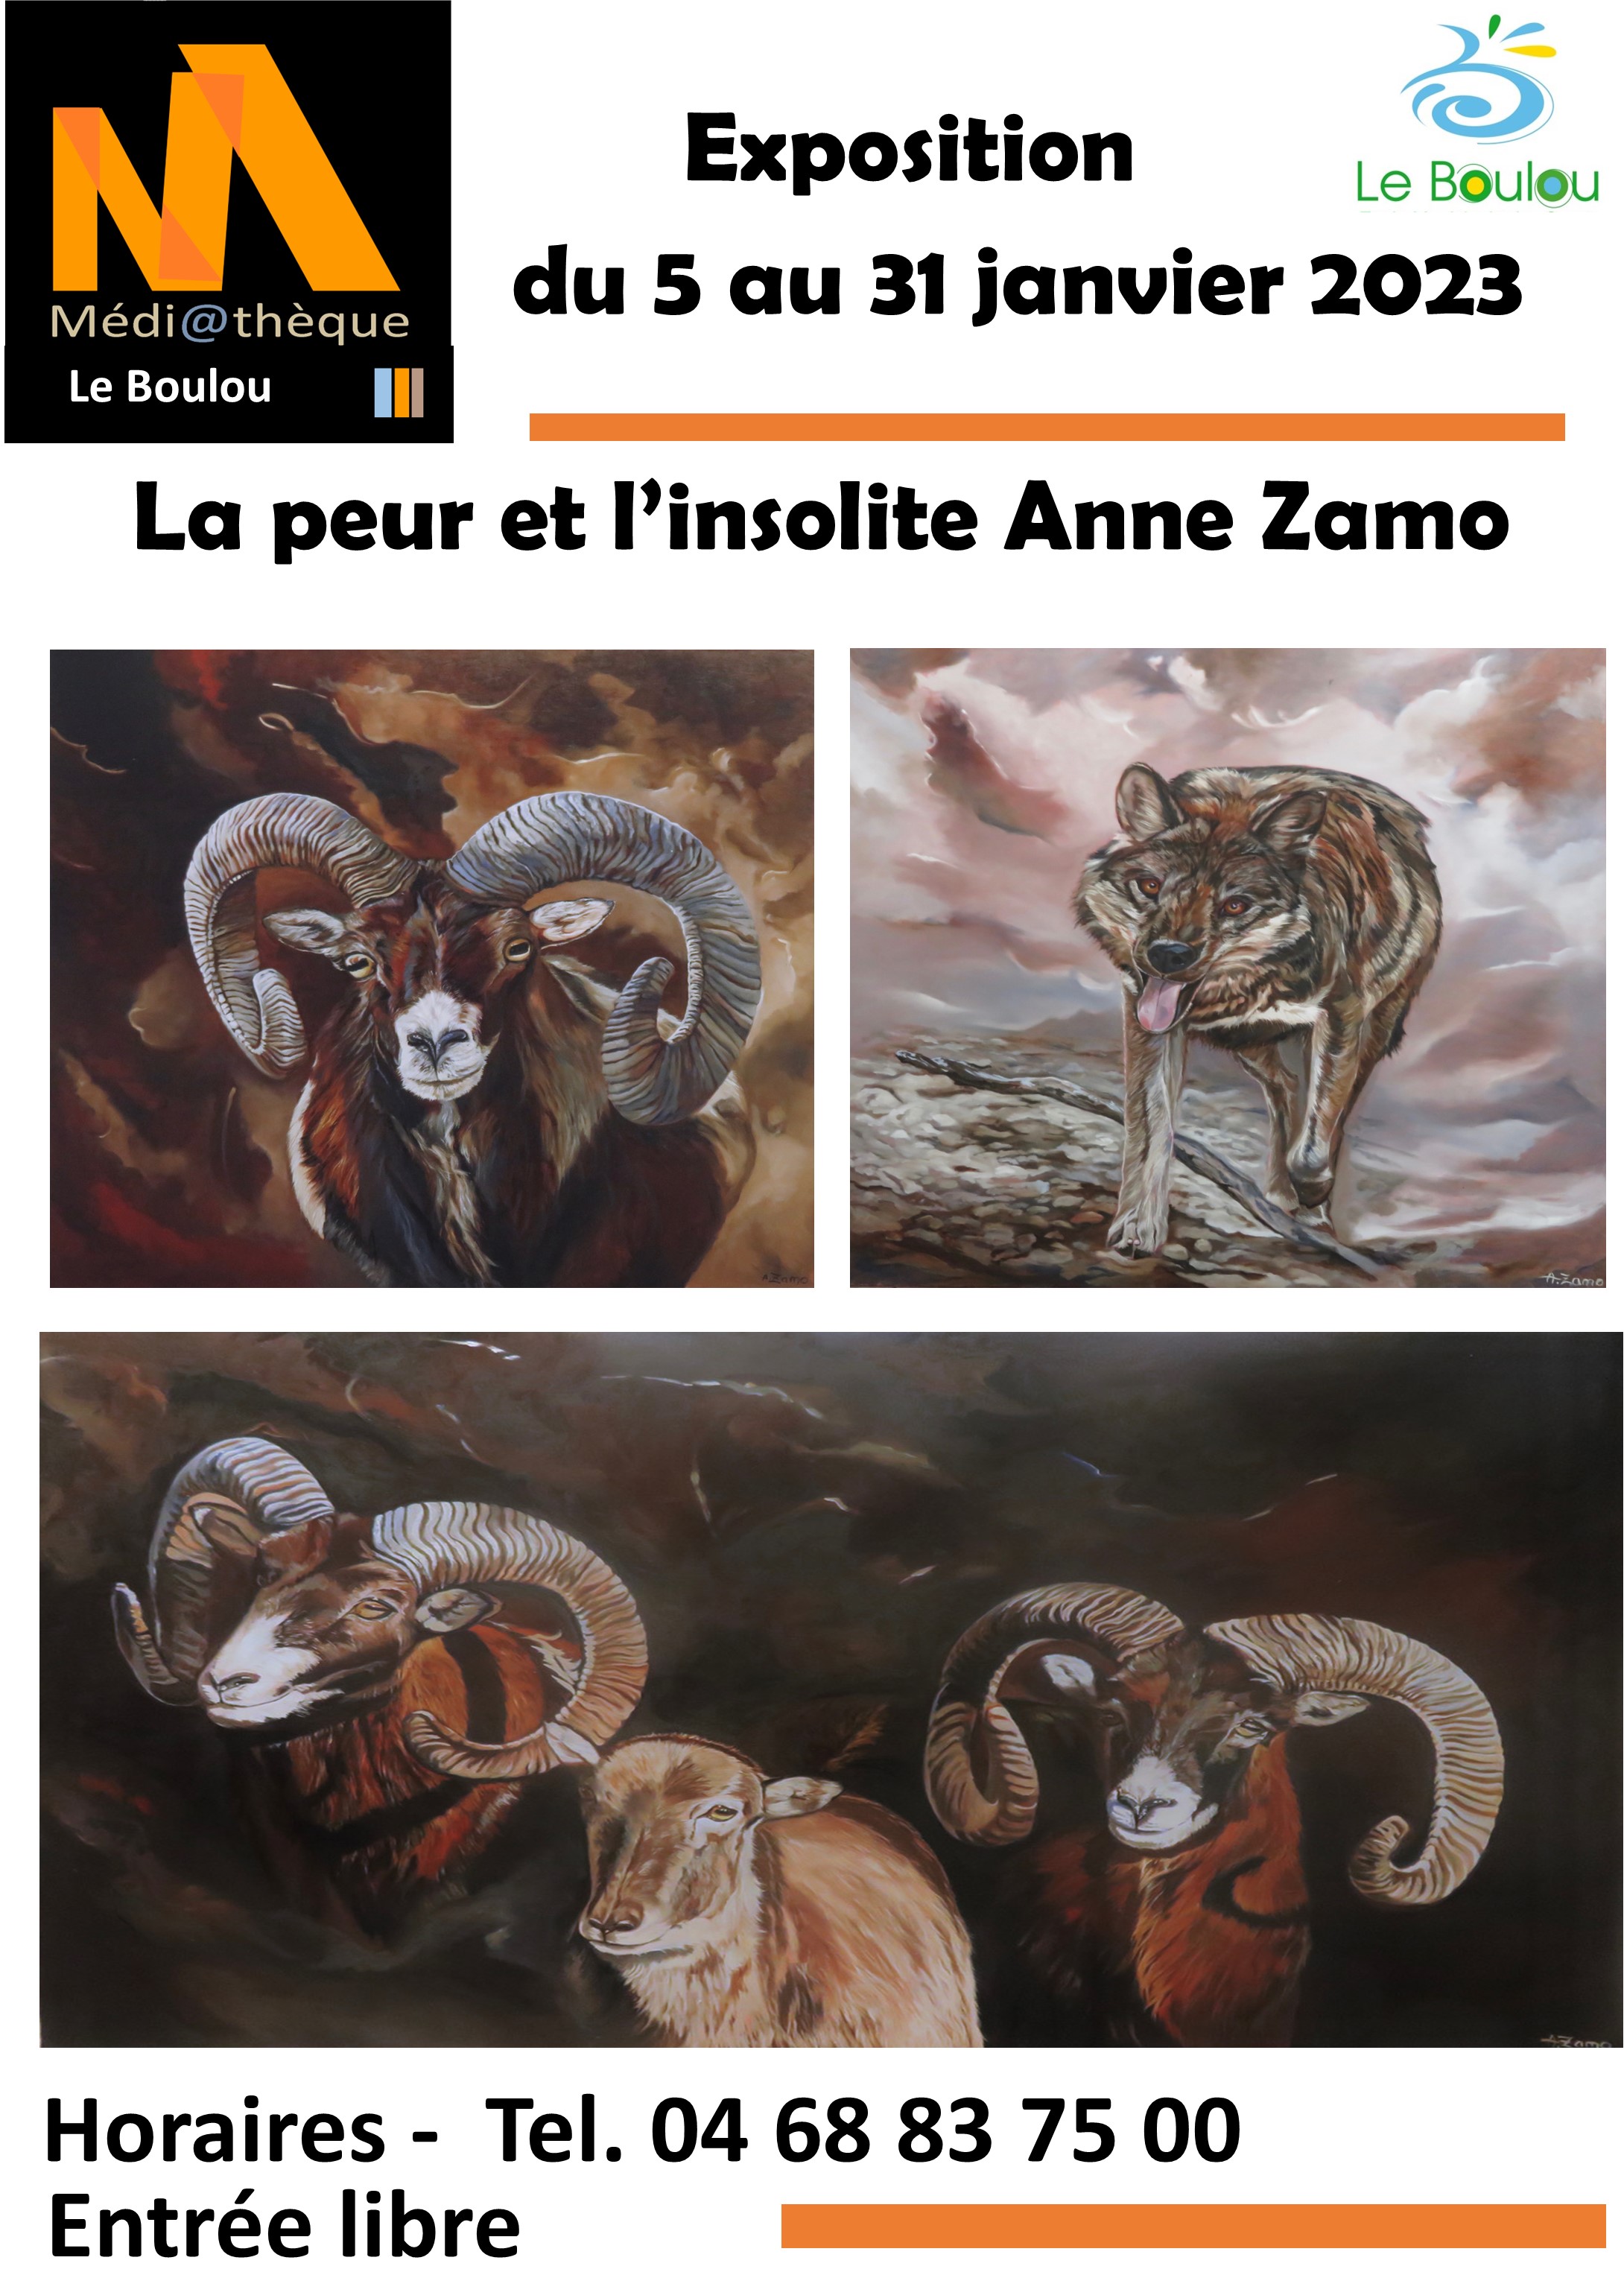 EXPOSITION "LA PEUR ET L'INSOLITE" DE ANNE ZAMO